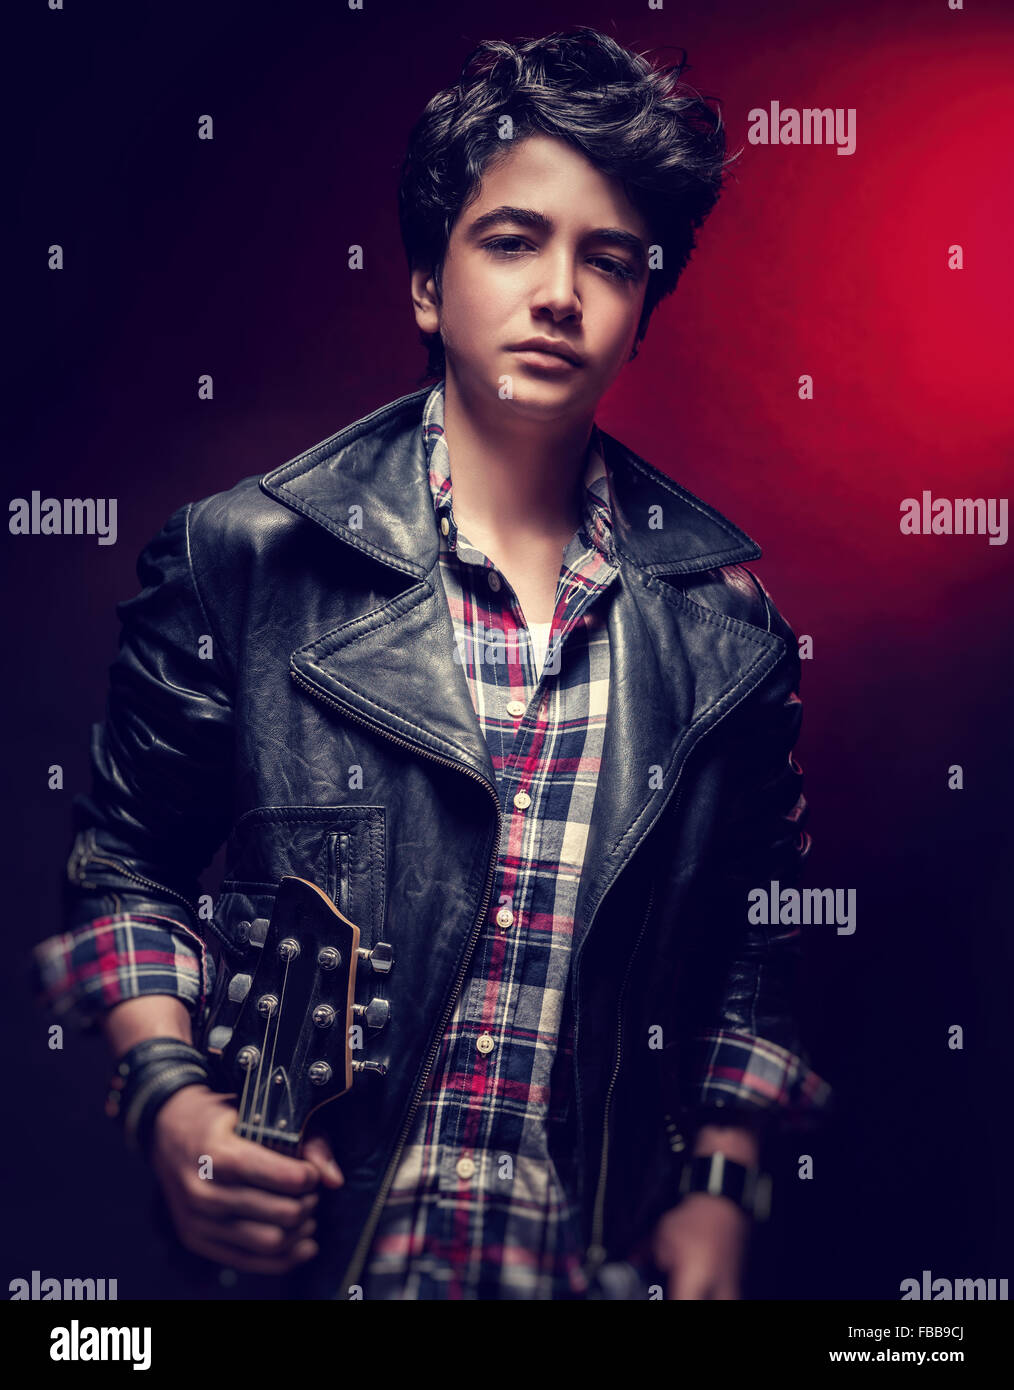 Attraktive Teen Mann posiert mit Gitarre über dunkelroten Hintergrund, Musiker mit modischen Frisur Stockfoto